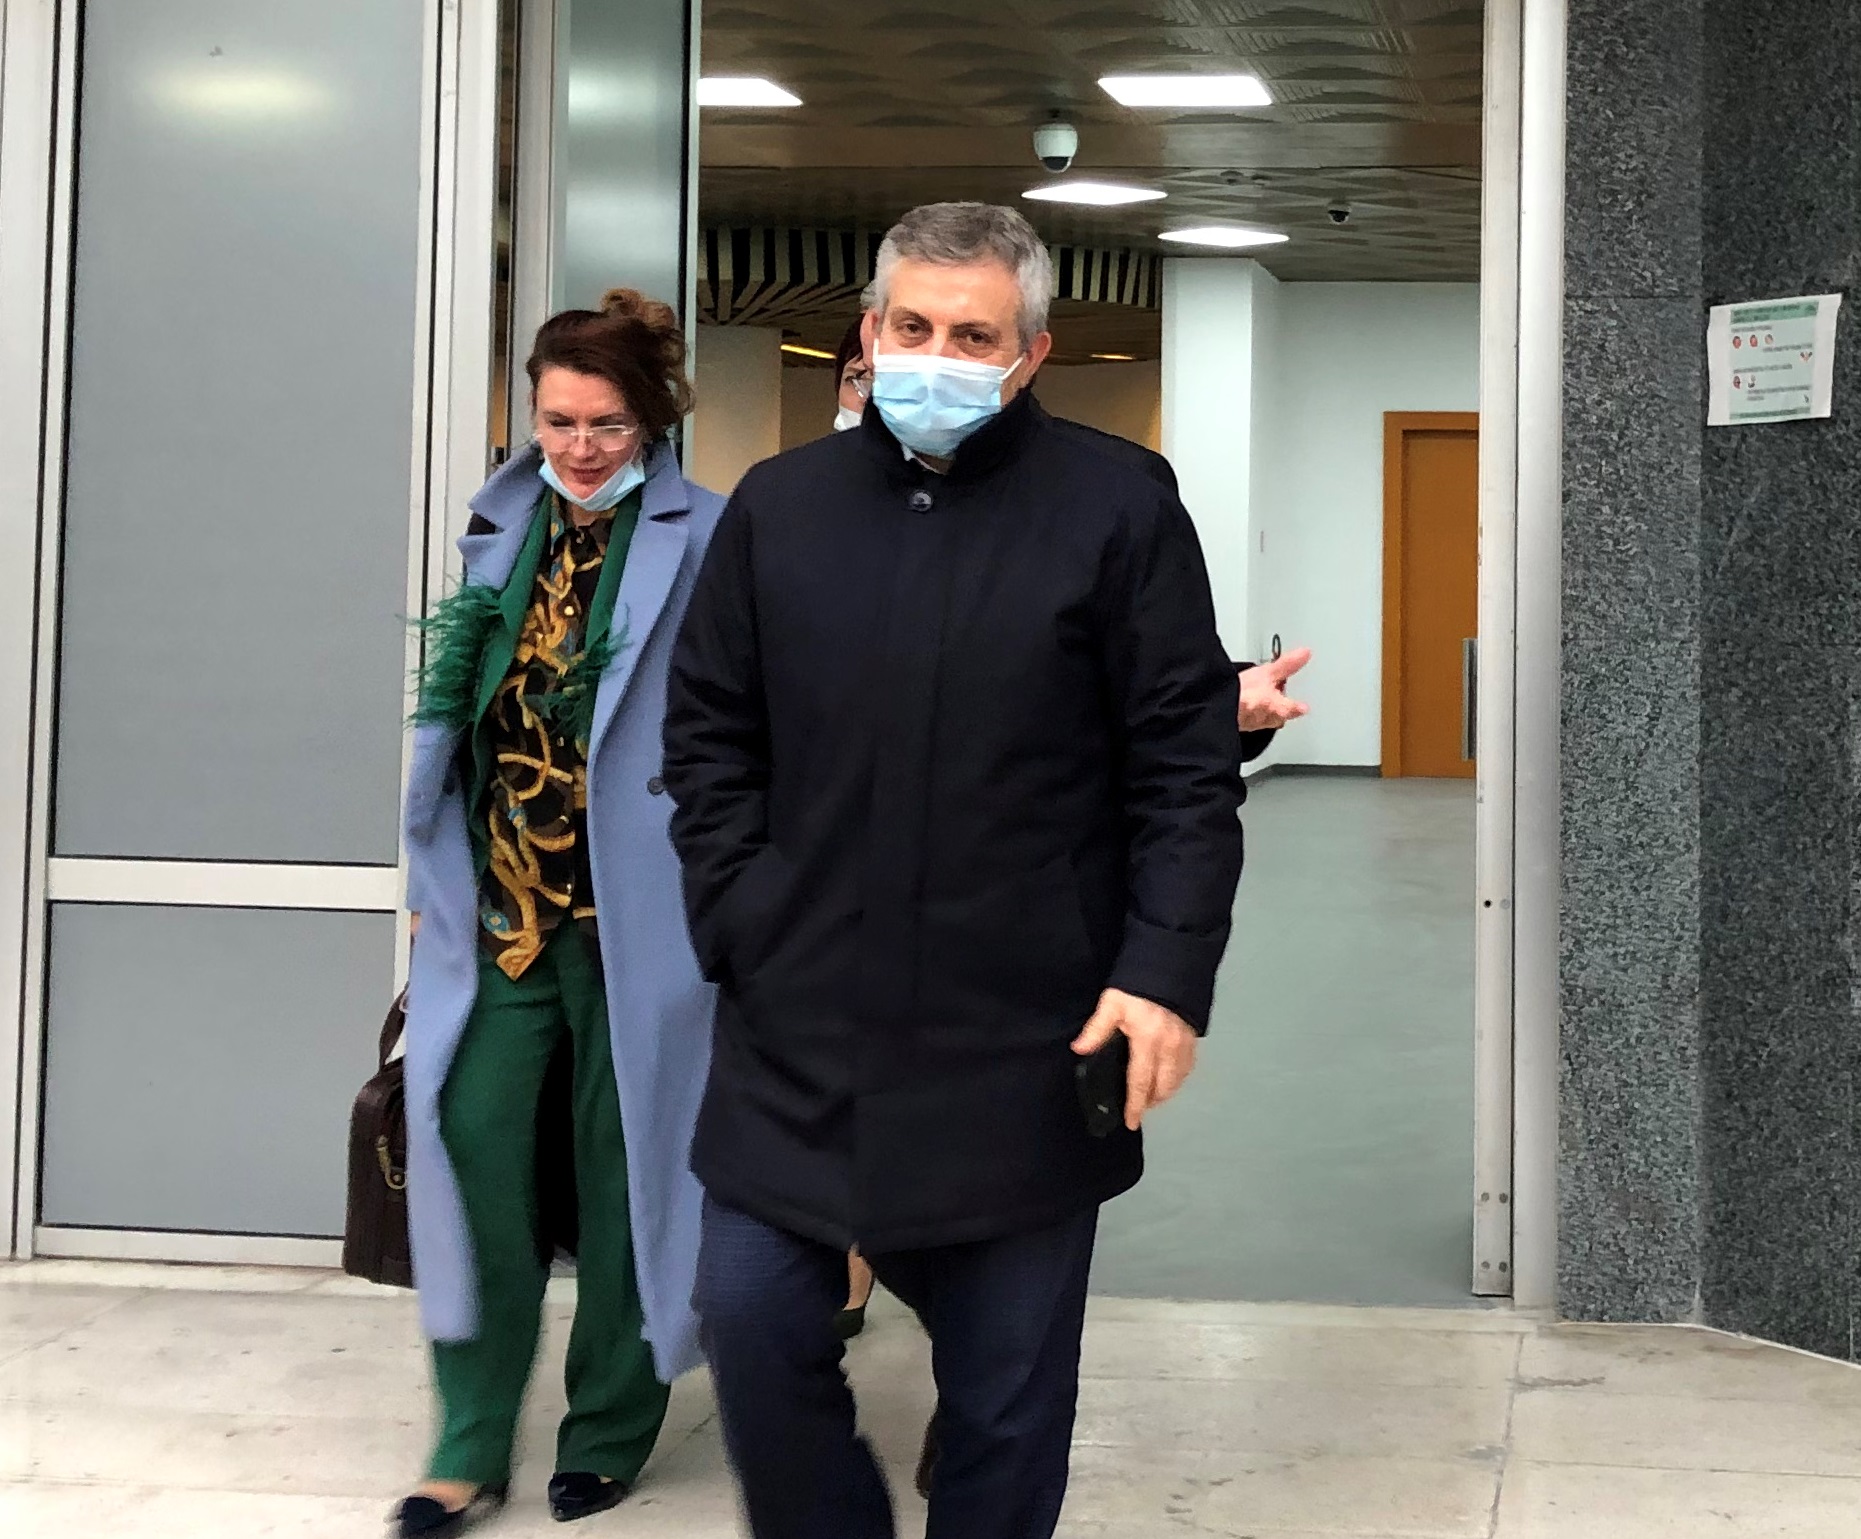 Prokurori Enrik Haxhiraj duke dalë nga seanca në KPK | Foto : Edmond Hoxhaj/BIRN